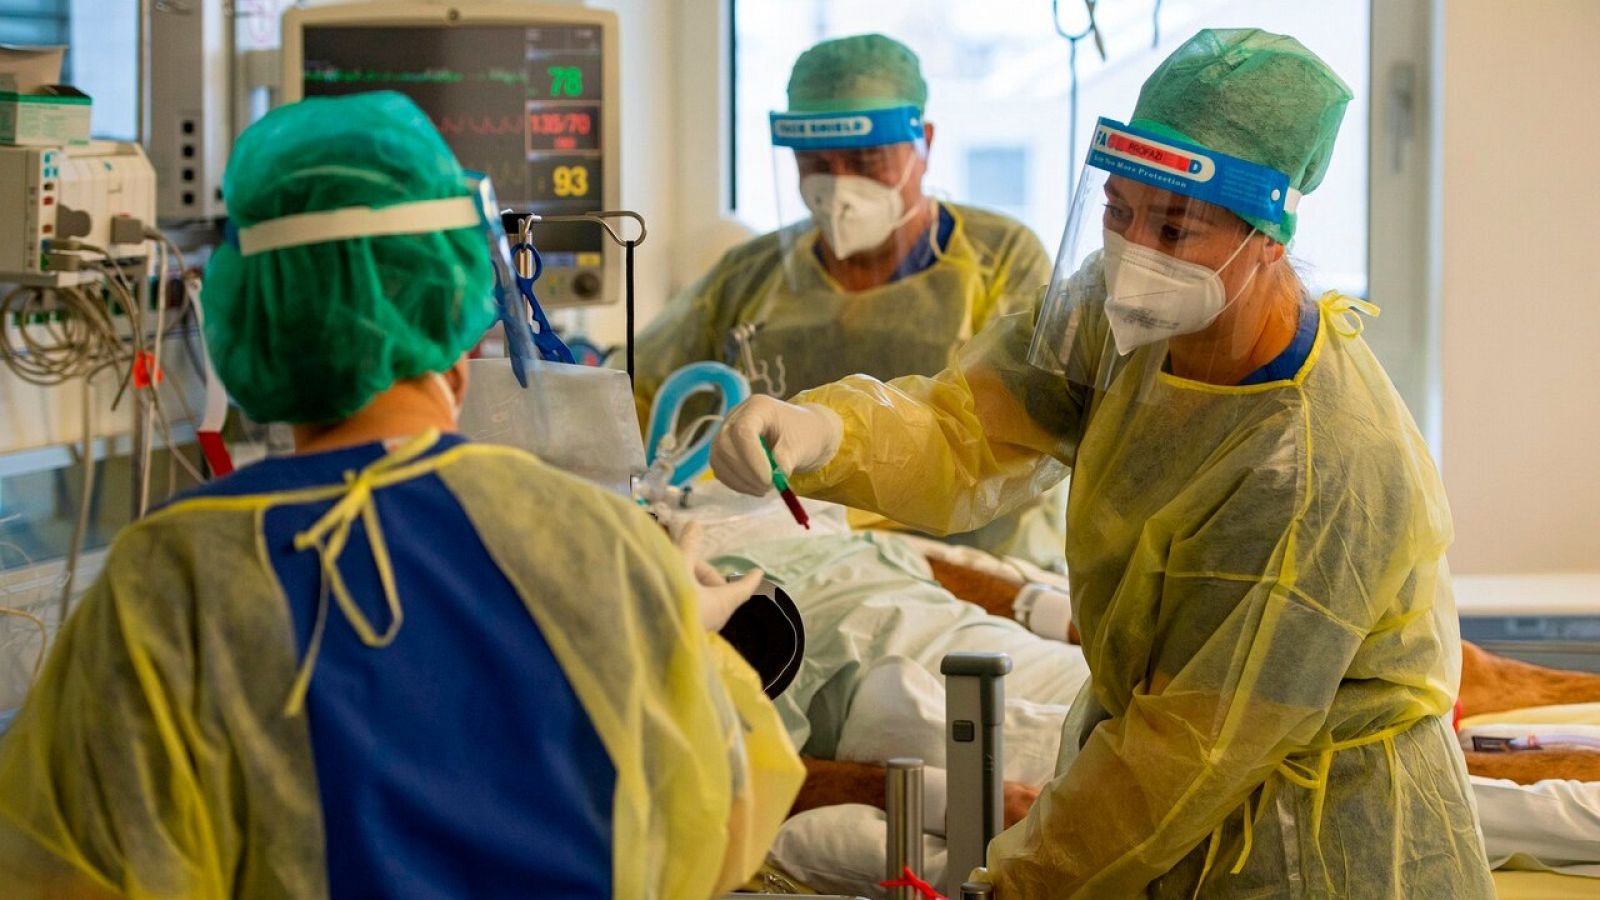 Enfermeras atienden a un paciente de COVID-19 en el hospital Klinikum Rechts der Isar de Munich, en Alemania. LENNART PREISS / AFP.